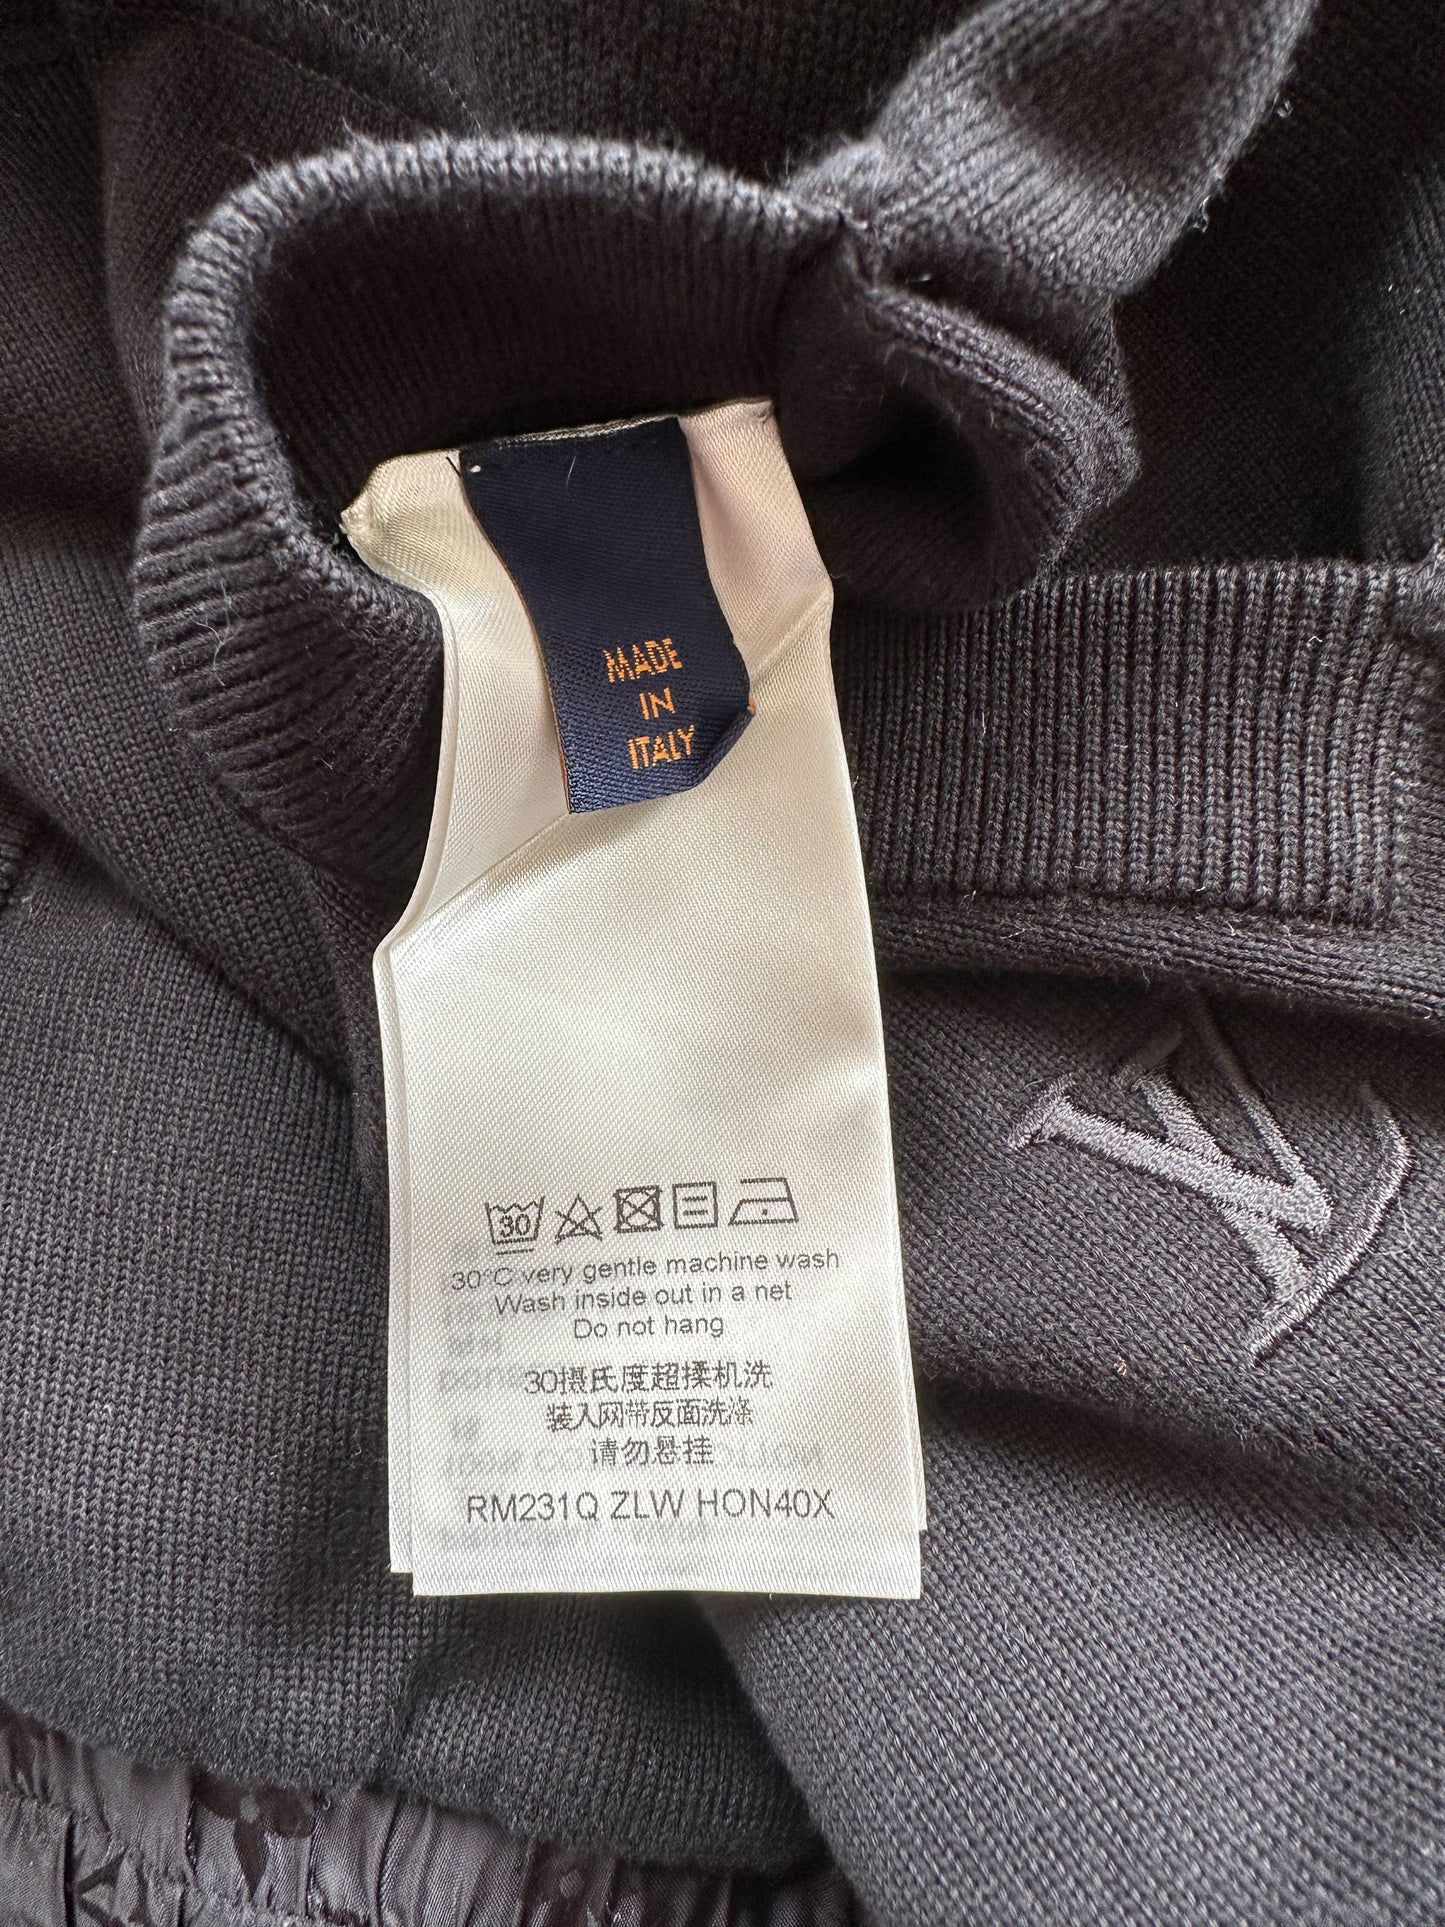 Louis Vuitton Black Monogram Reversible Bomber Jacket